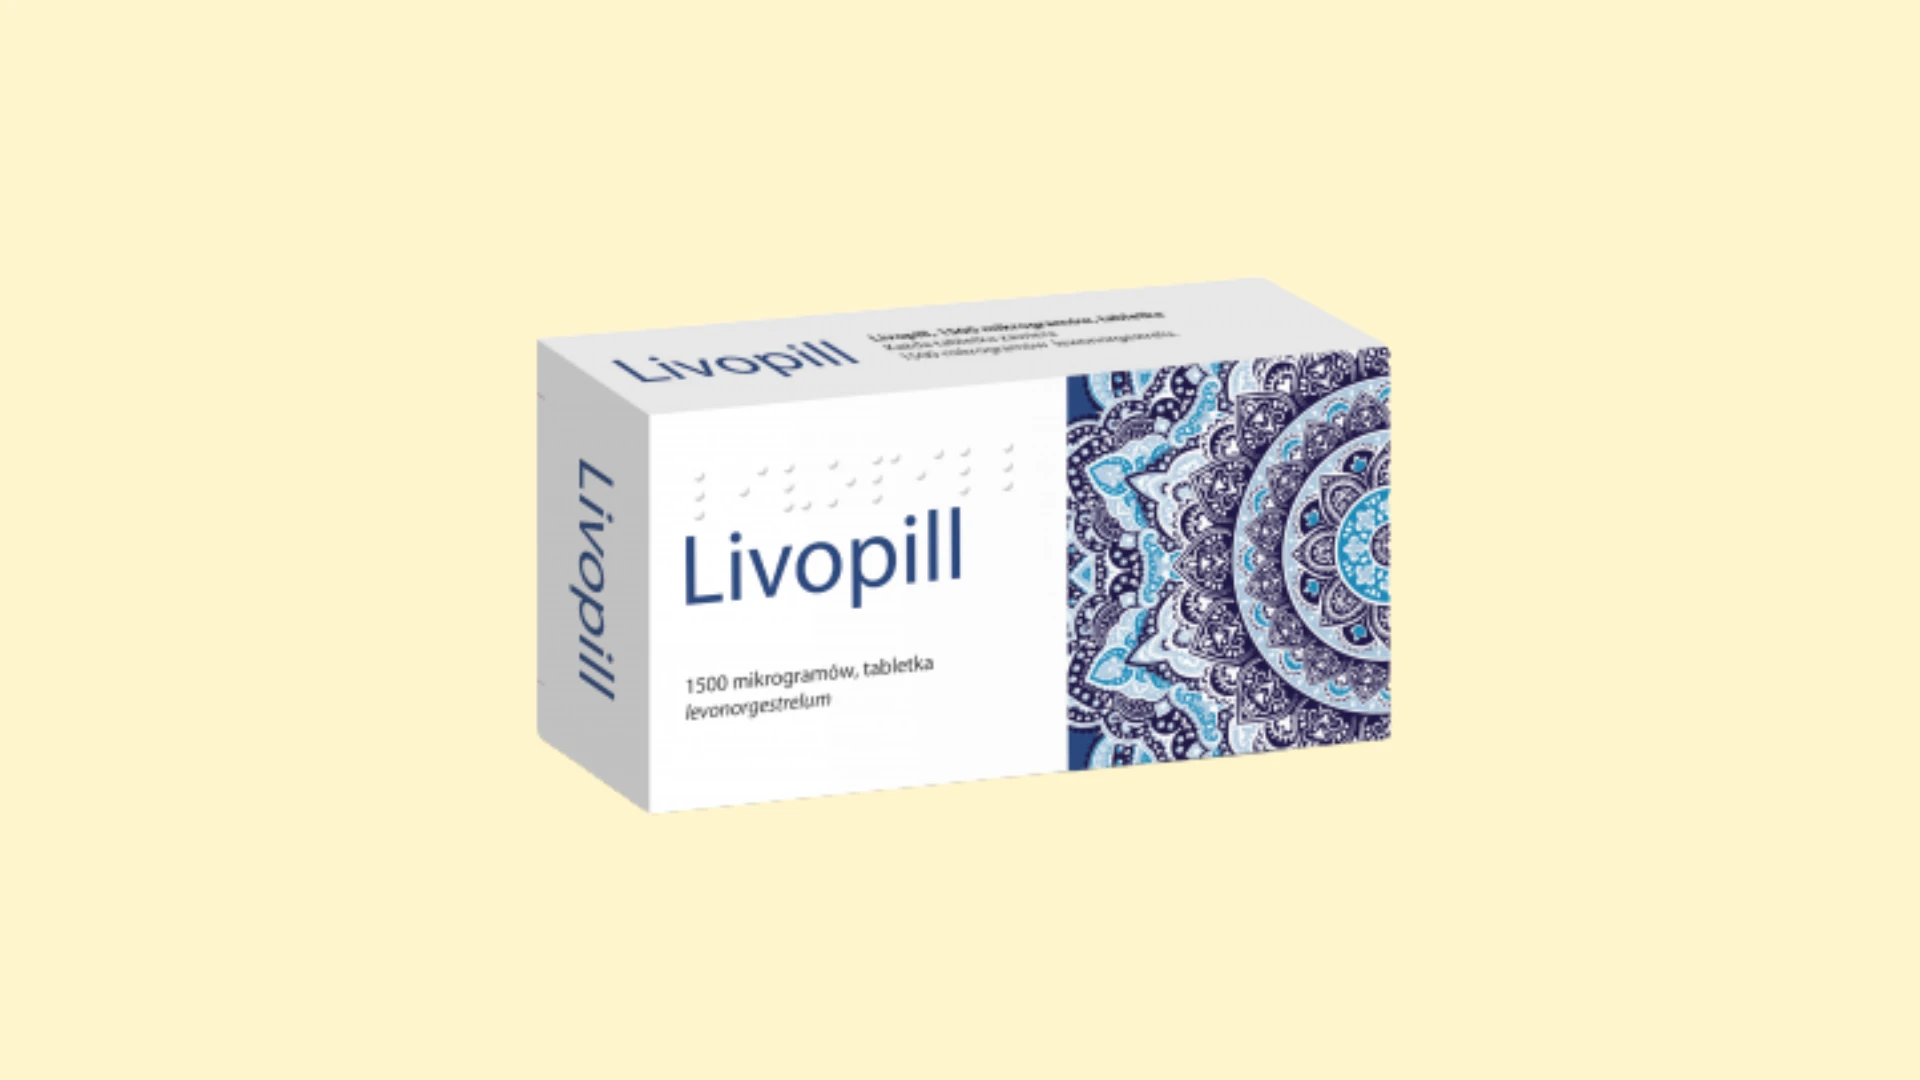 Livopill - E-recepta - recepta online z konsultacją | cena,dawkowanie, przeciwwskazania